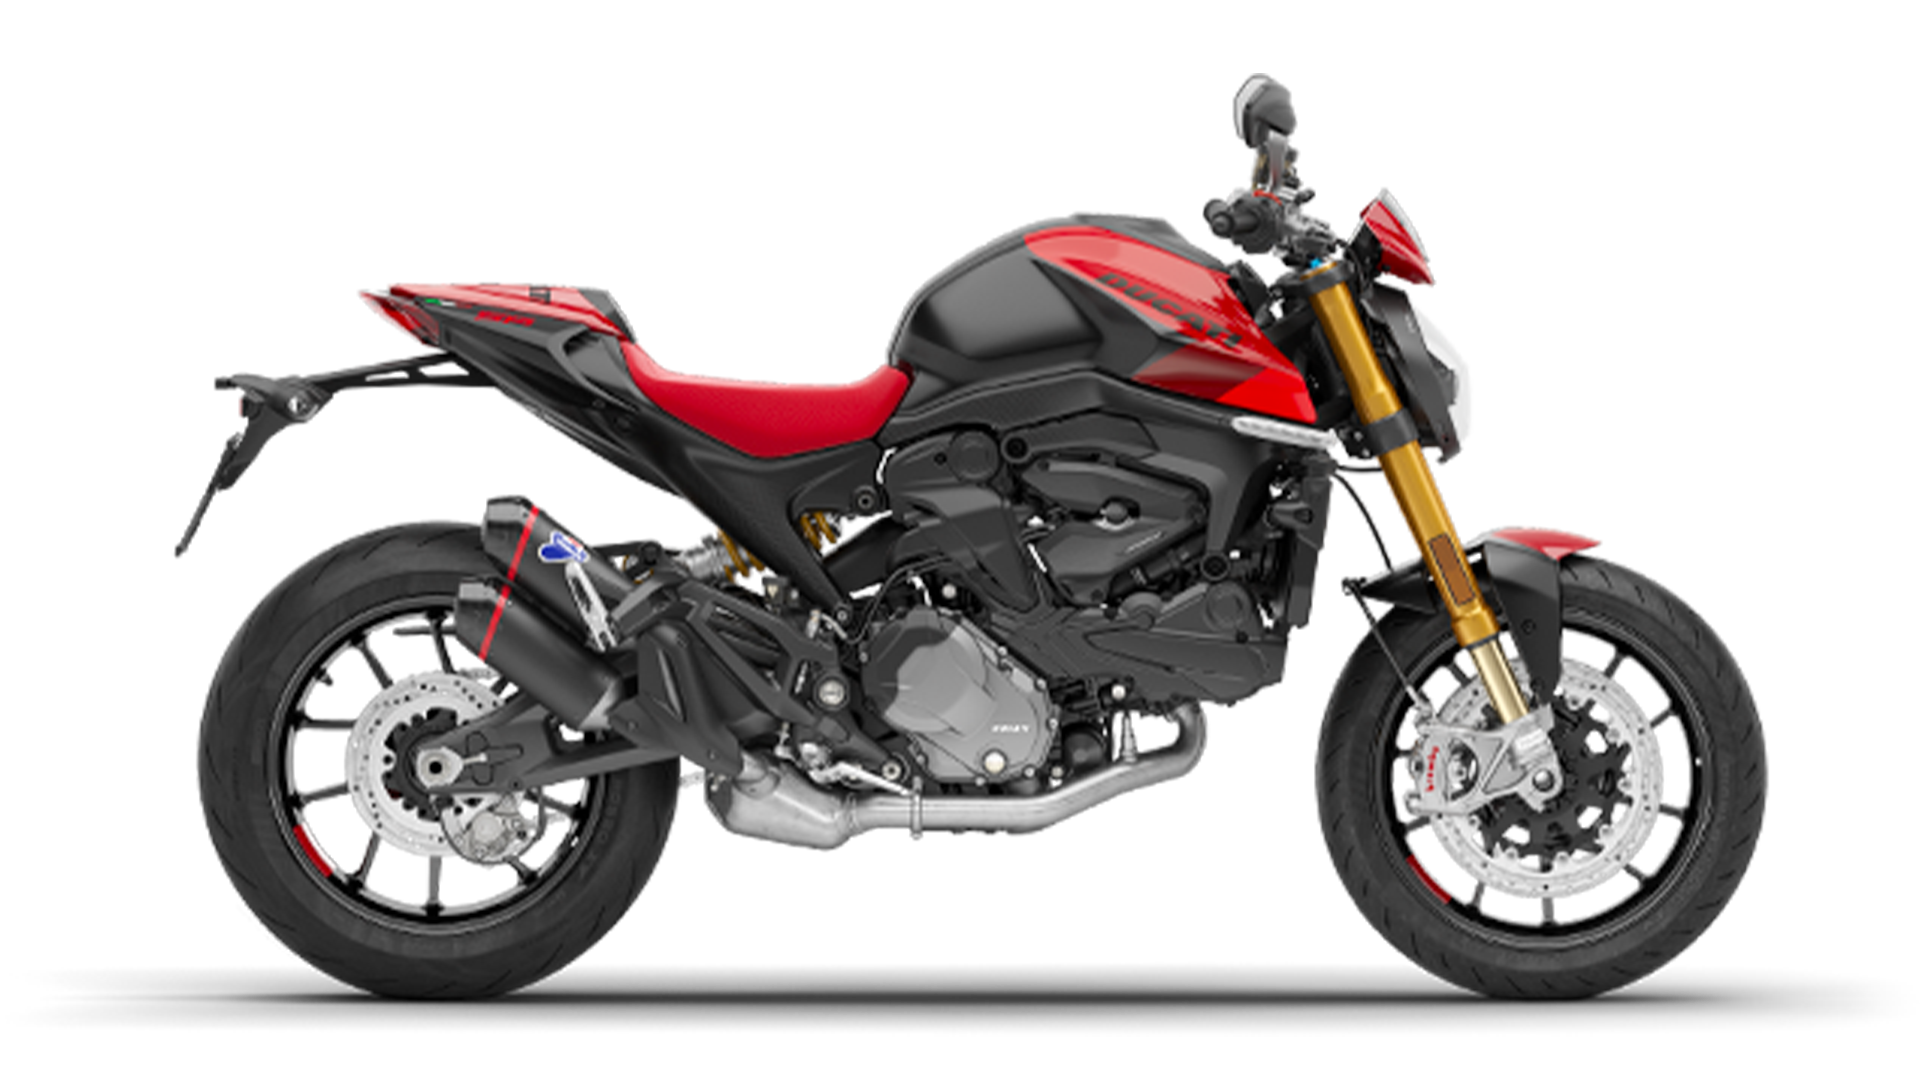 Monster von Ducati in Rot und Schwarz